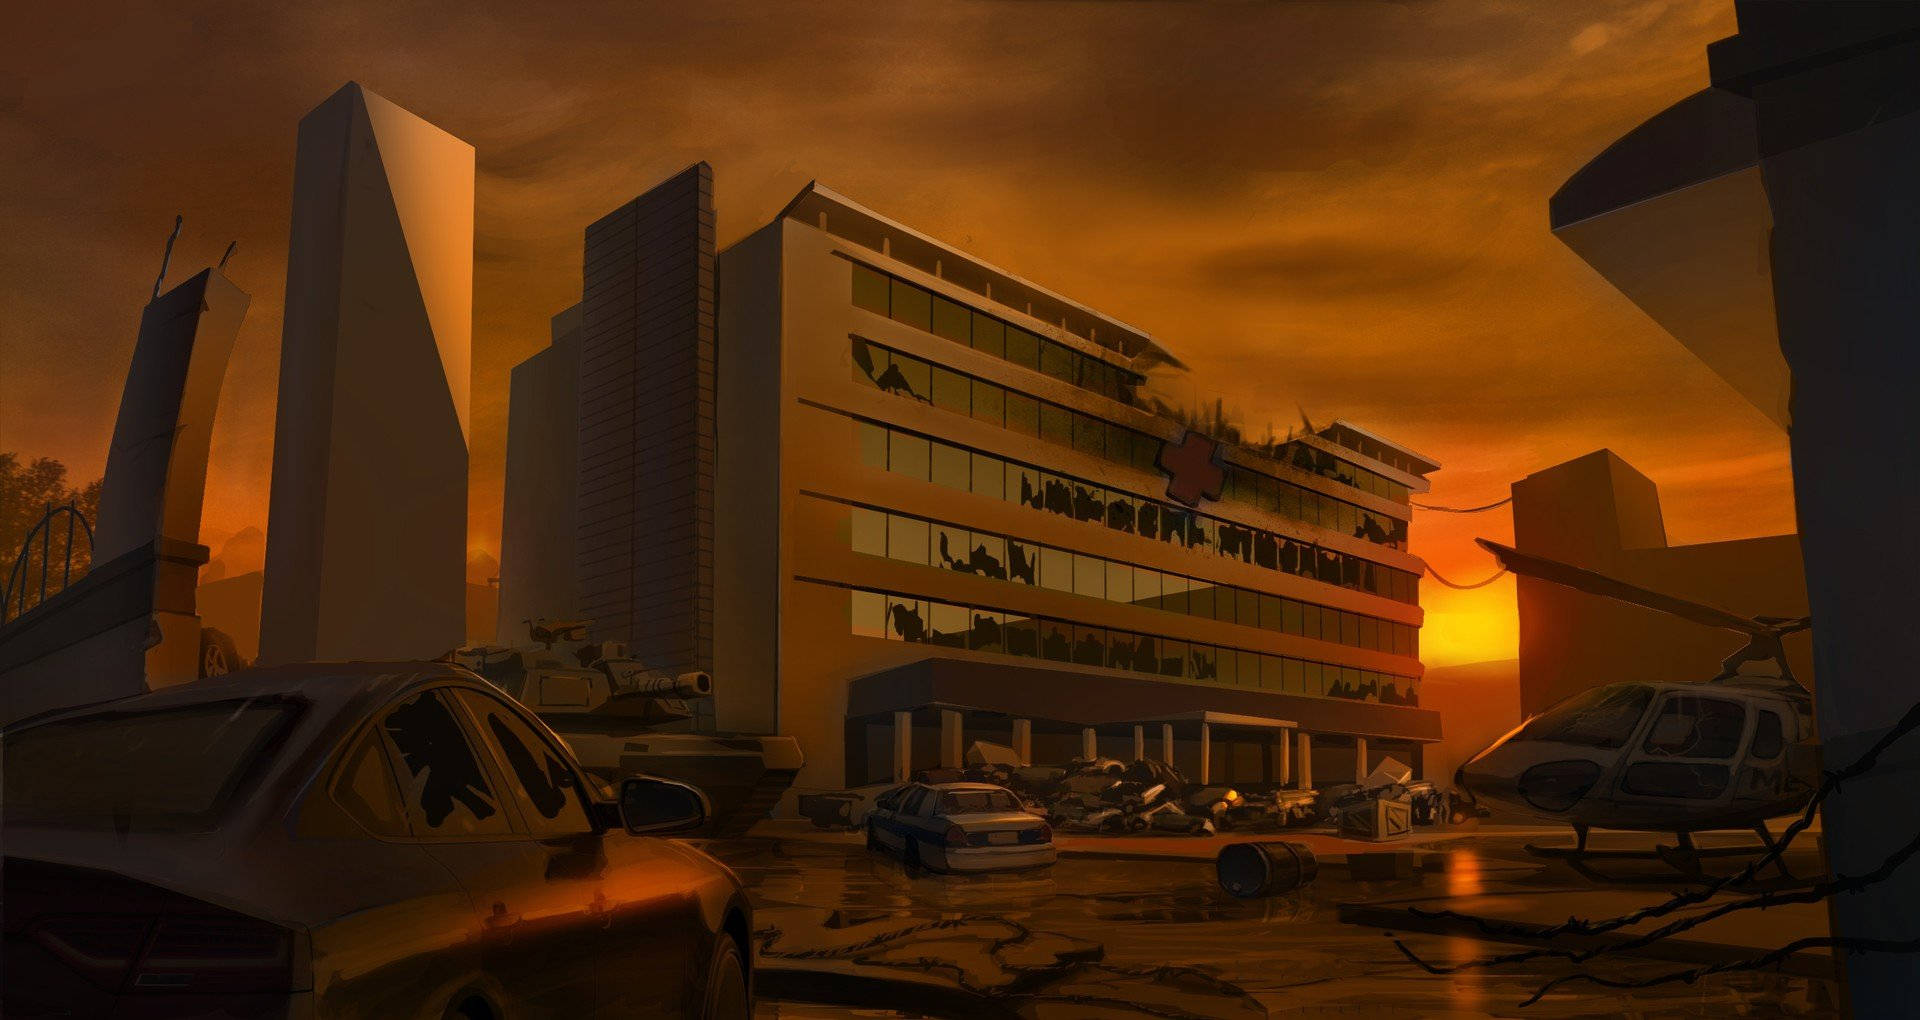 Dystopisktsjukhusbyggnadsraseri. Wallpaper